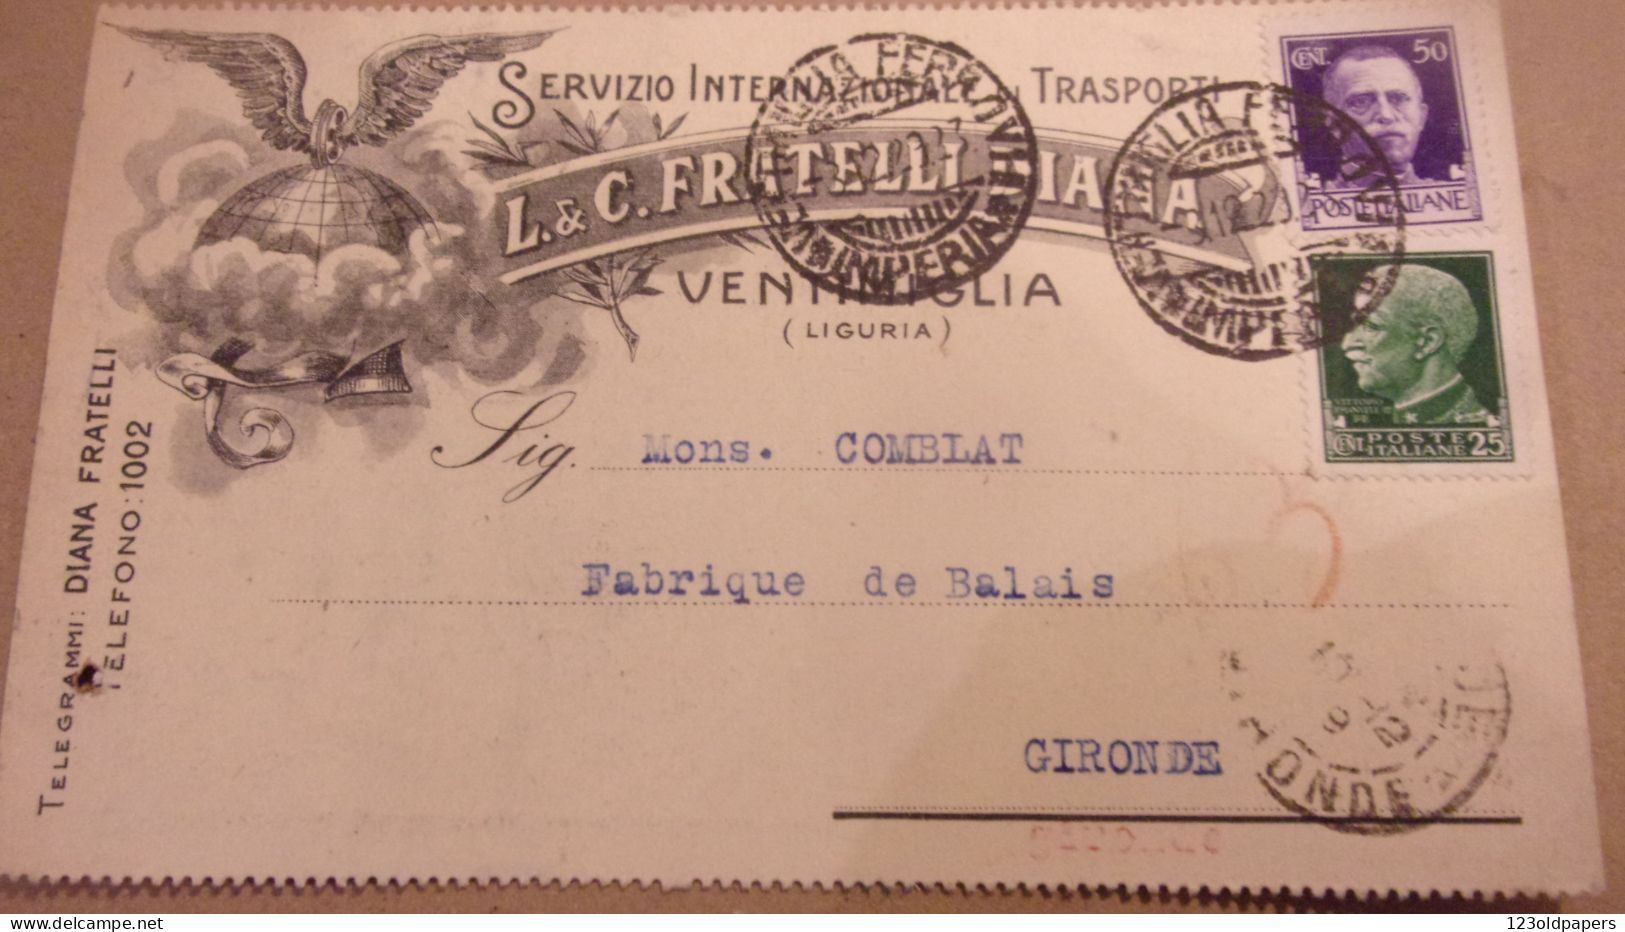 VENTIMIGLIA - IMPERIA - CARTOLINA COMMERCIALE "L.& C. FRATELLI DIANA" TRASPORTI INTERNAZIONALI - 1929 - Marcofilía